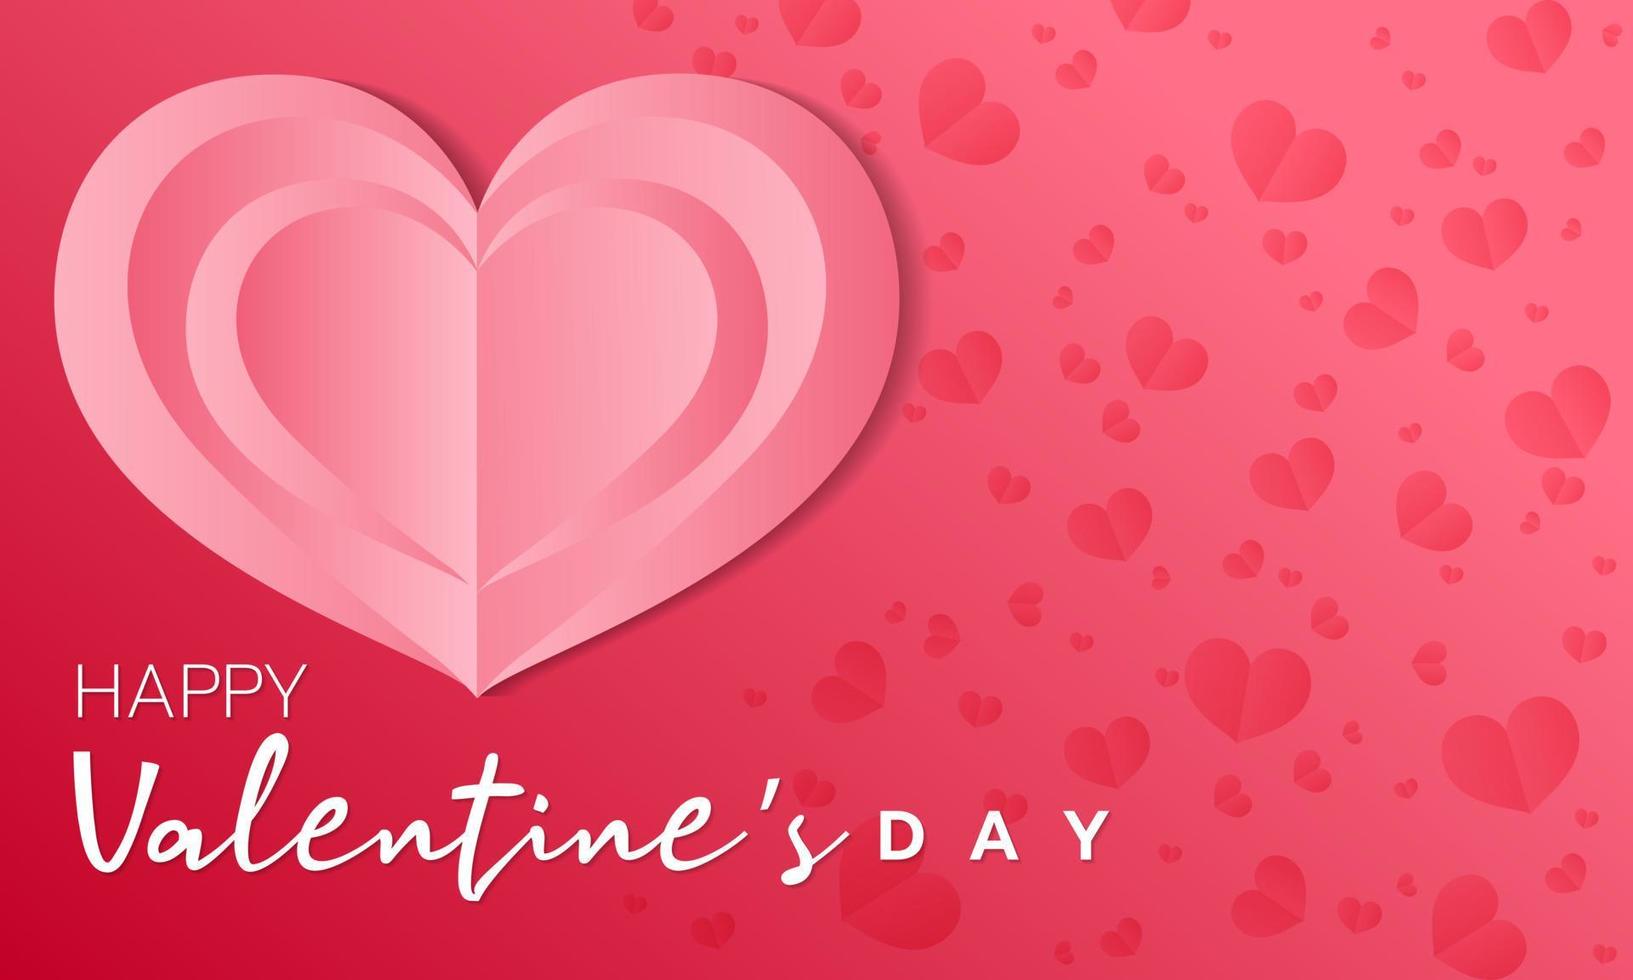 Rotes Herzpapier schnitt auf rosa Hintergrund mit kleinen Herzen auf der Seite als Hintergrund für am Valentinstag., Vektorillustration vektor